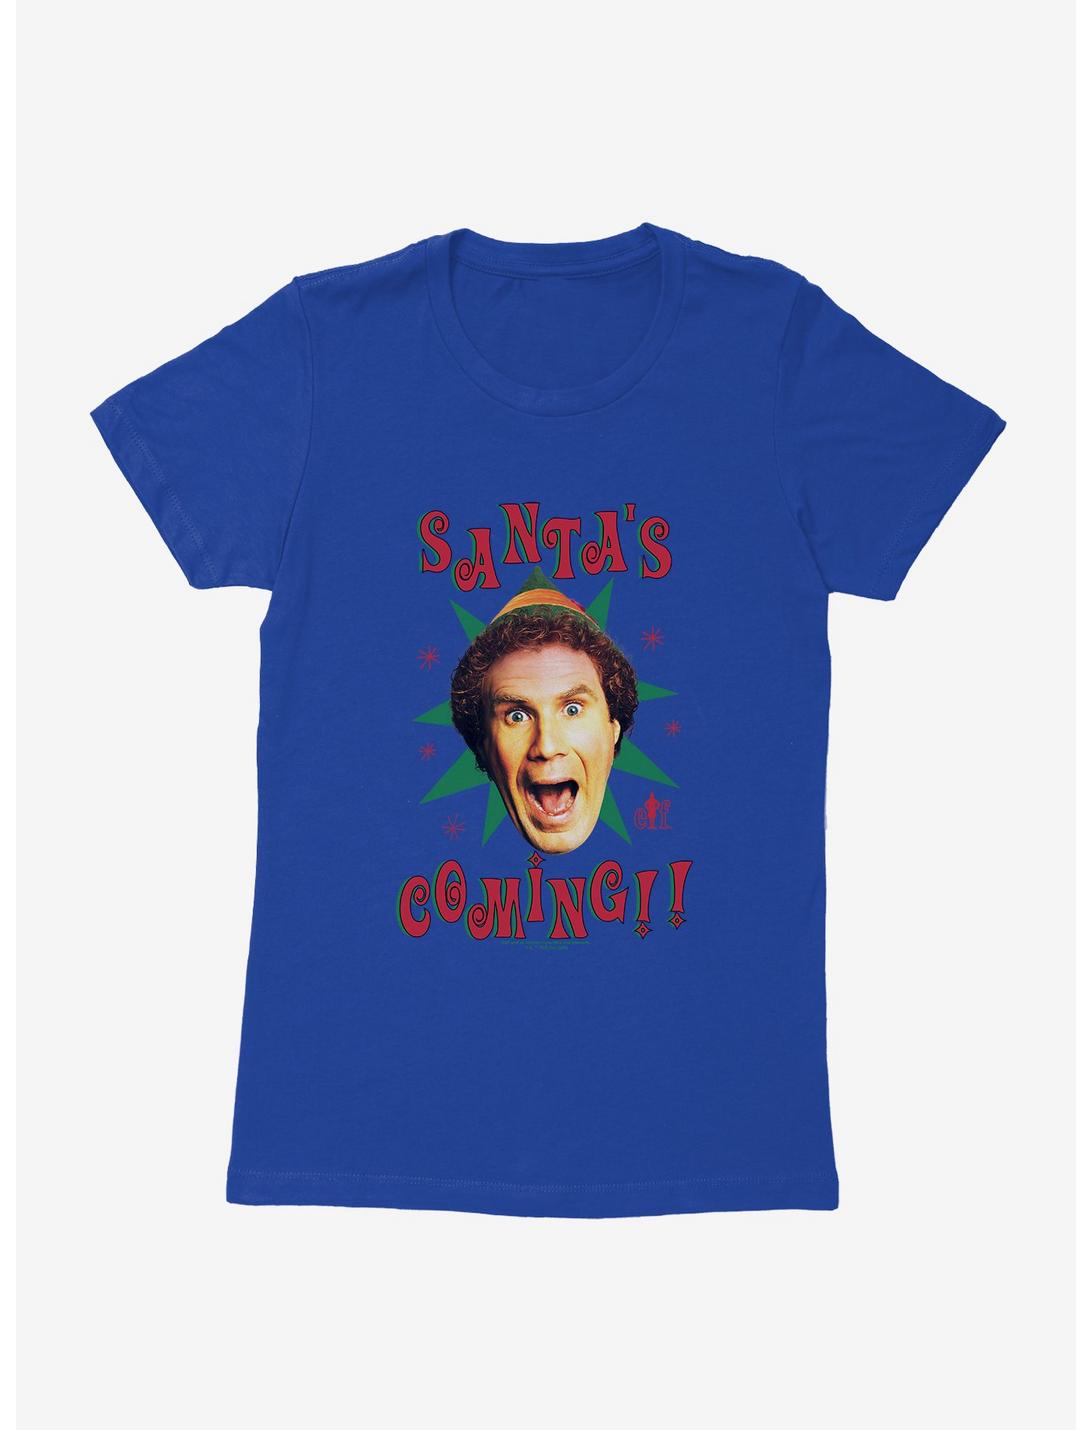 Elf Santa's Coming!! Womens T-Shirt, , hi-res